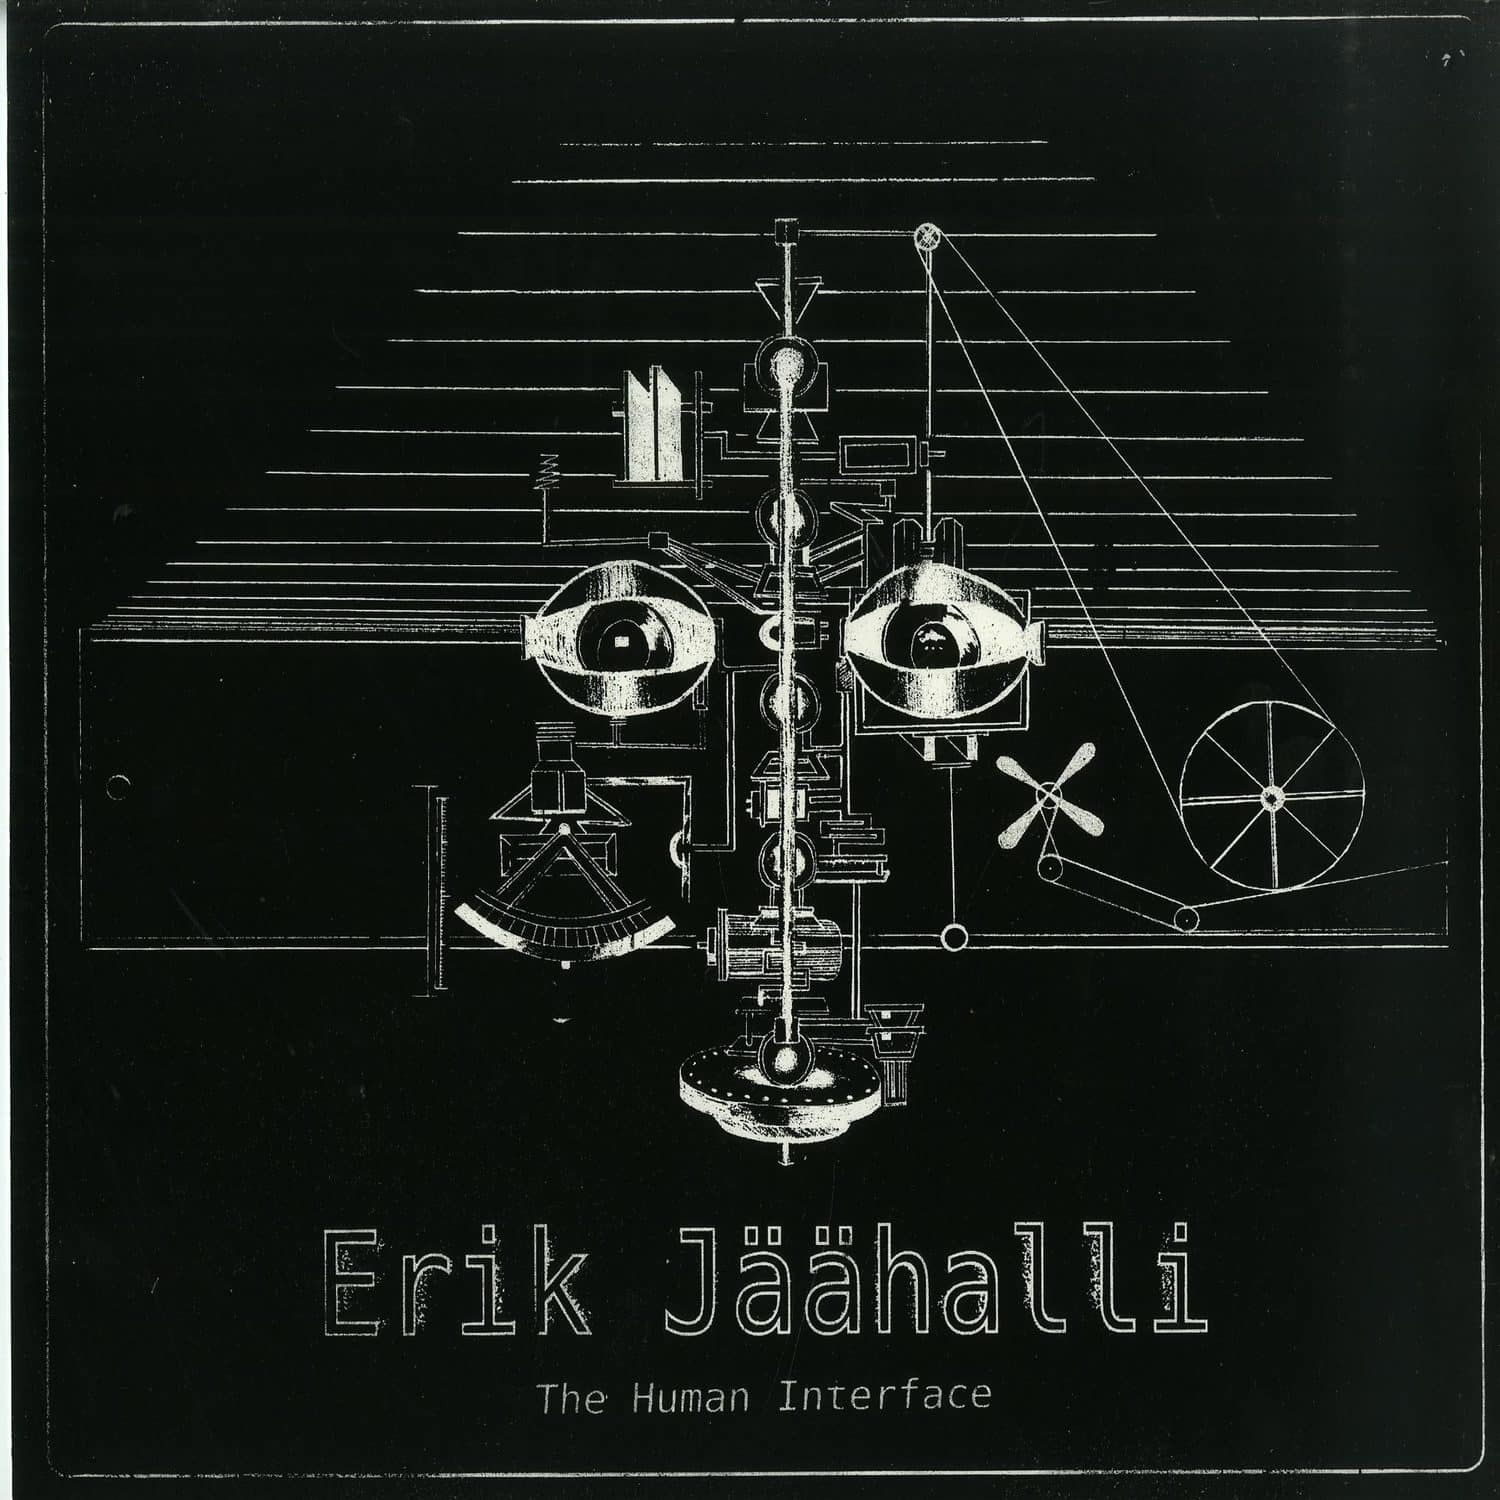 Erik Jaeaehalli - THE HUMAN INTERFACE LP